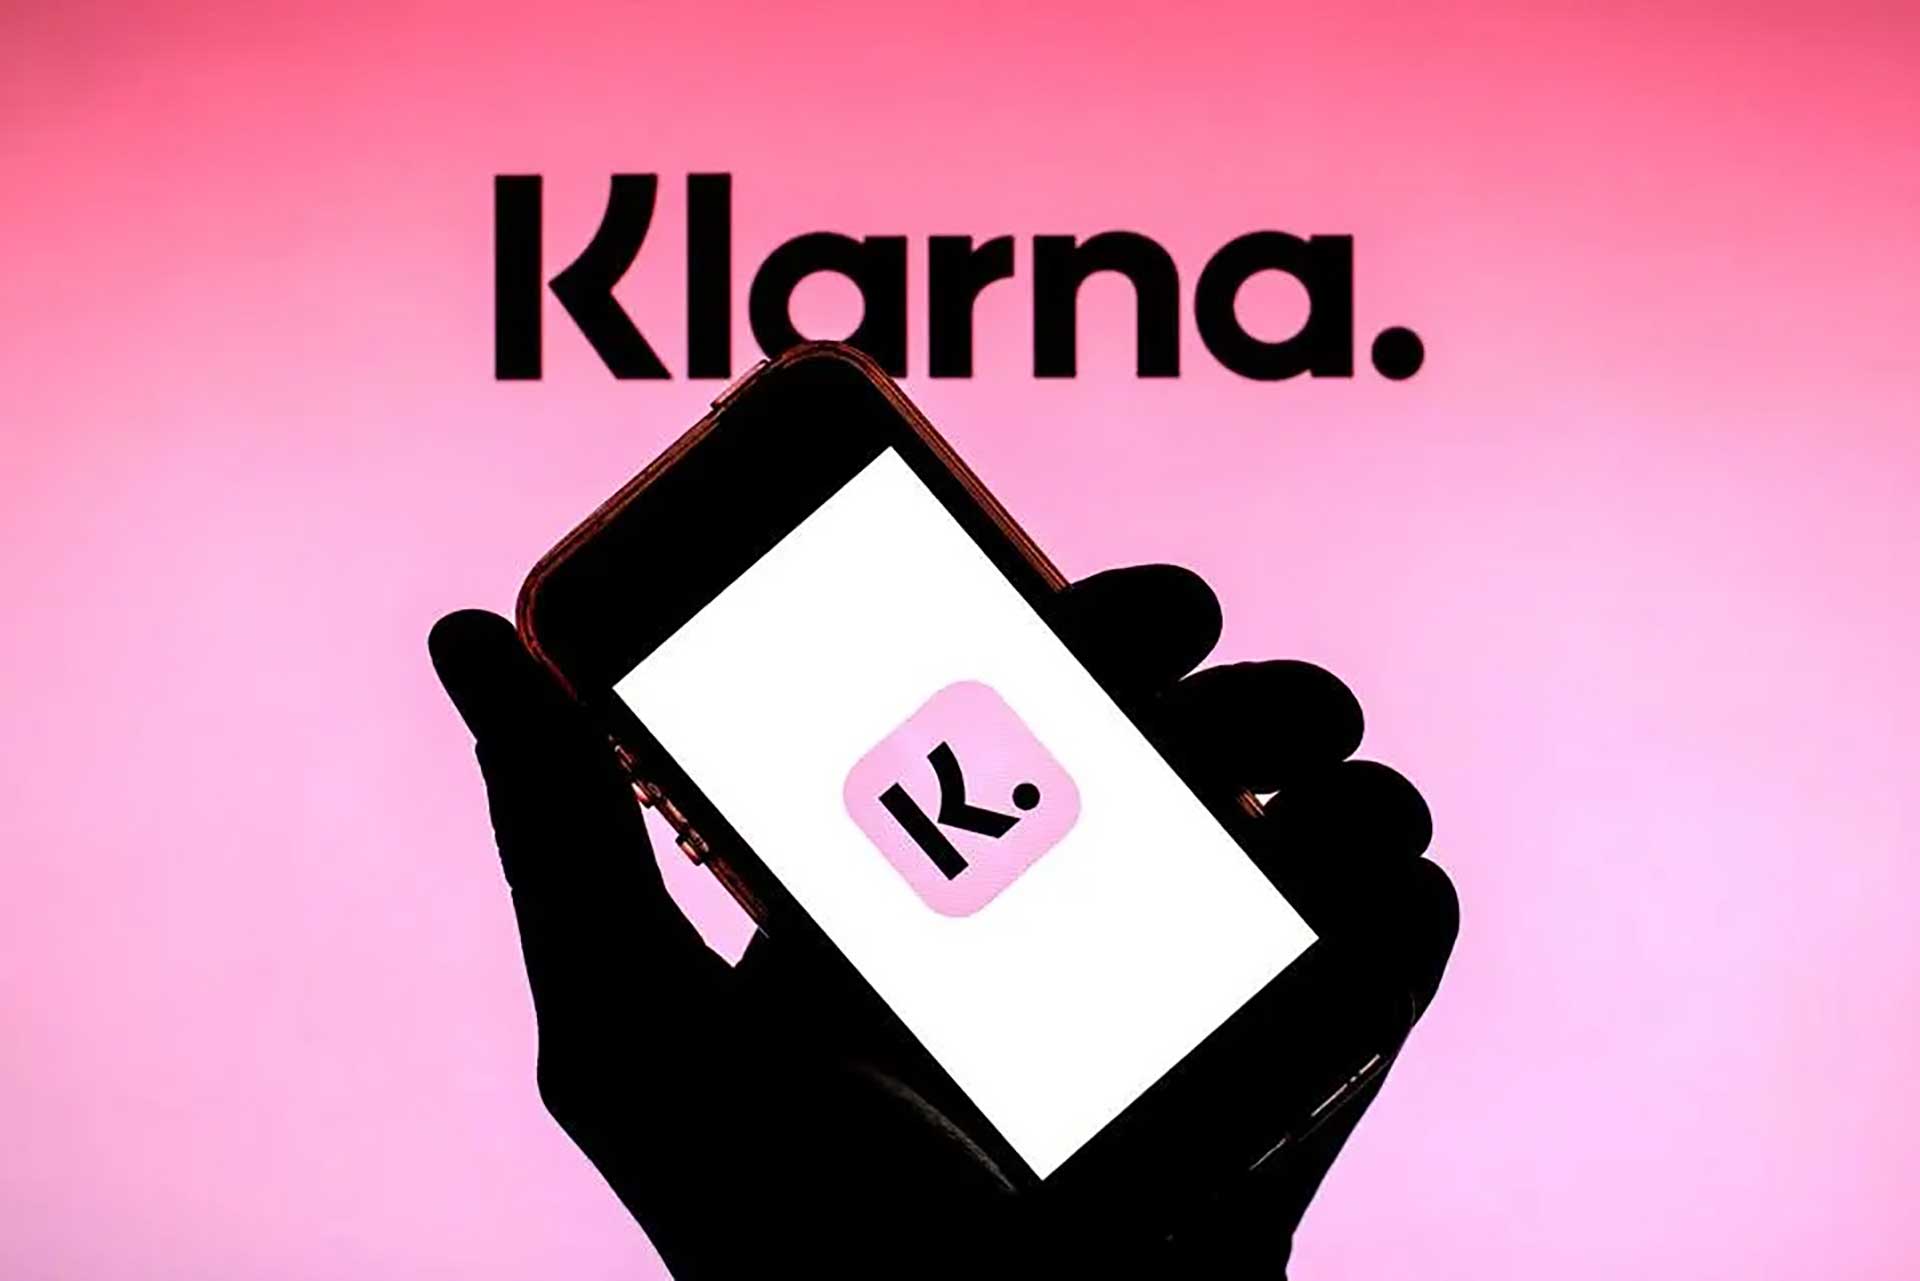 En hand som håller i en mobiltelefon som visar en rosa logotyp med bokstaven "K" och texten "Klarna." ovan, på rosa bakgrund, digital illustration.